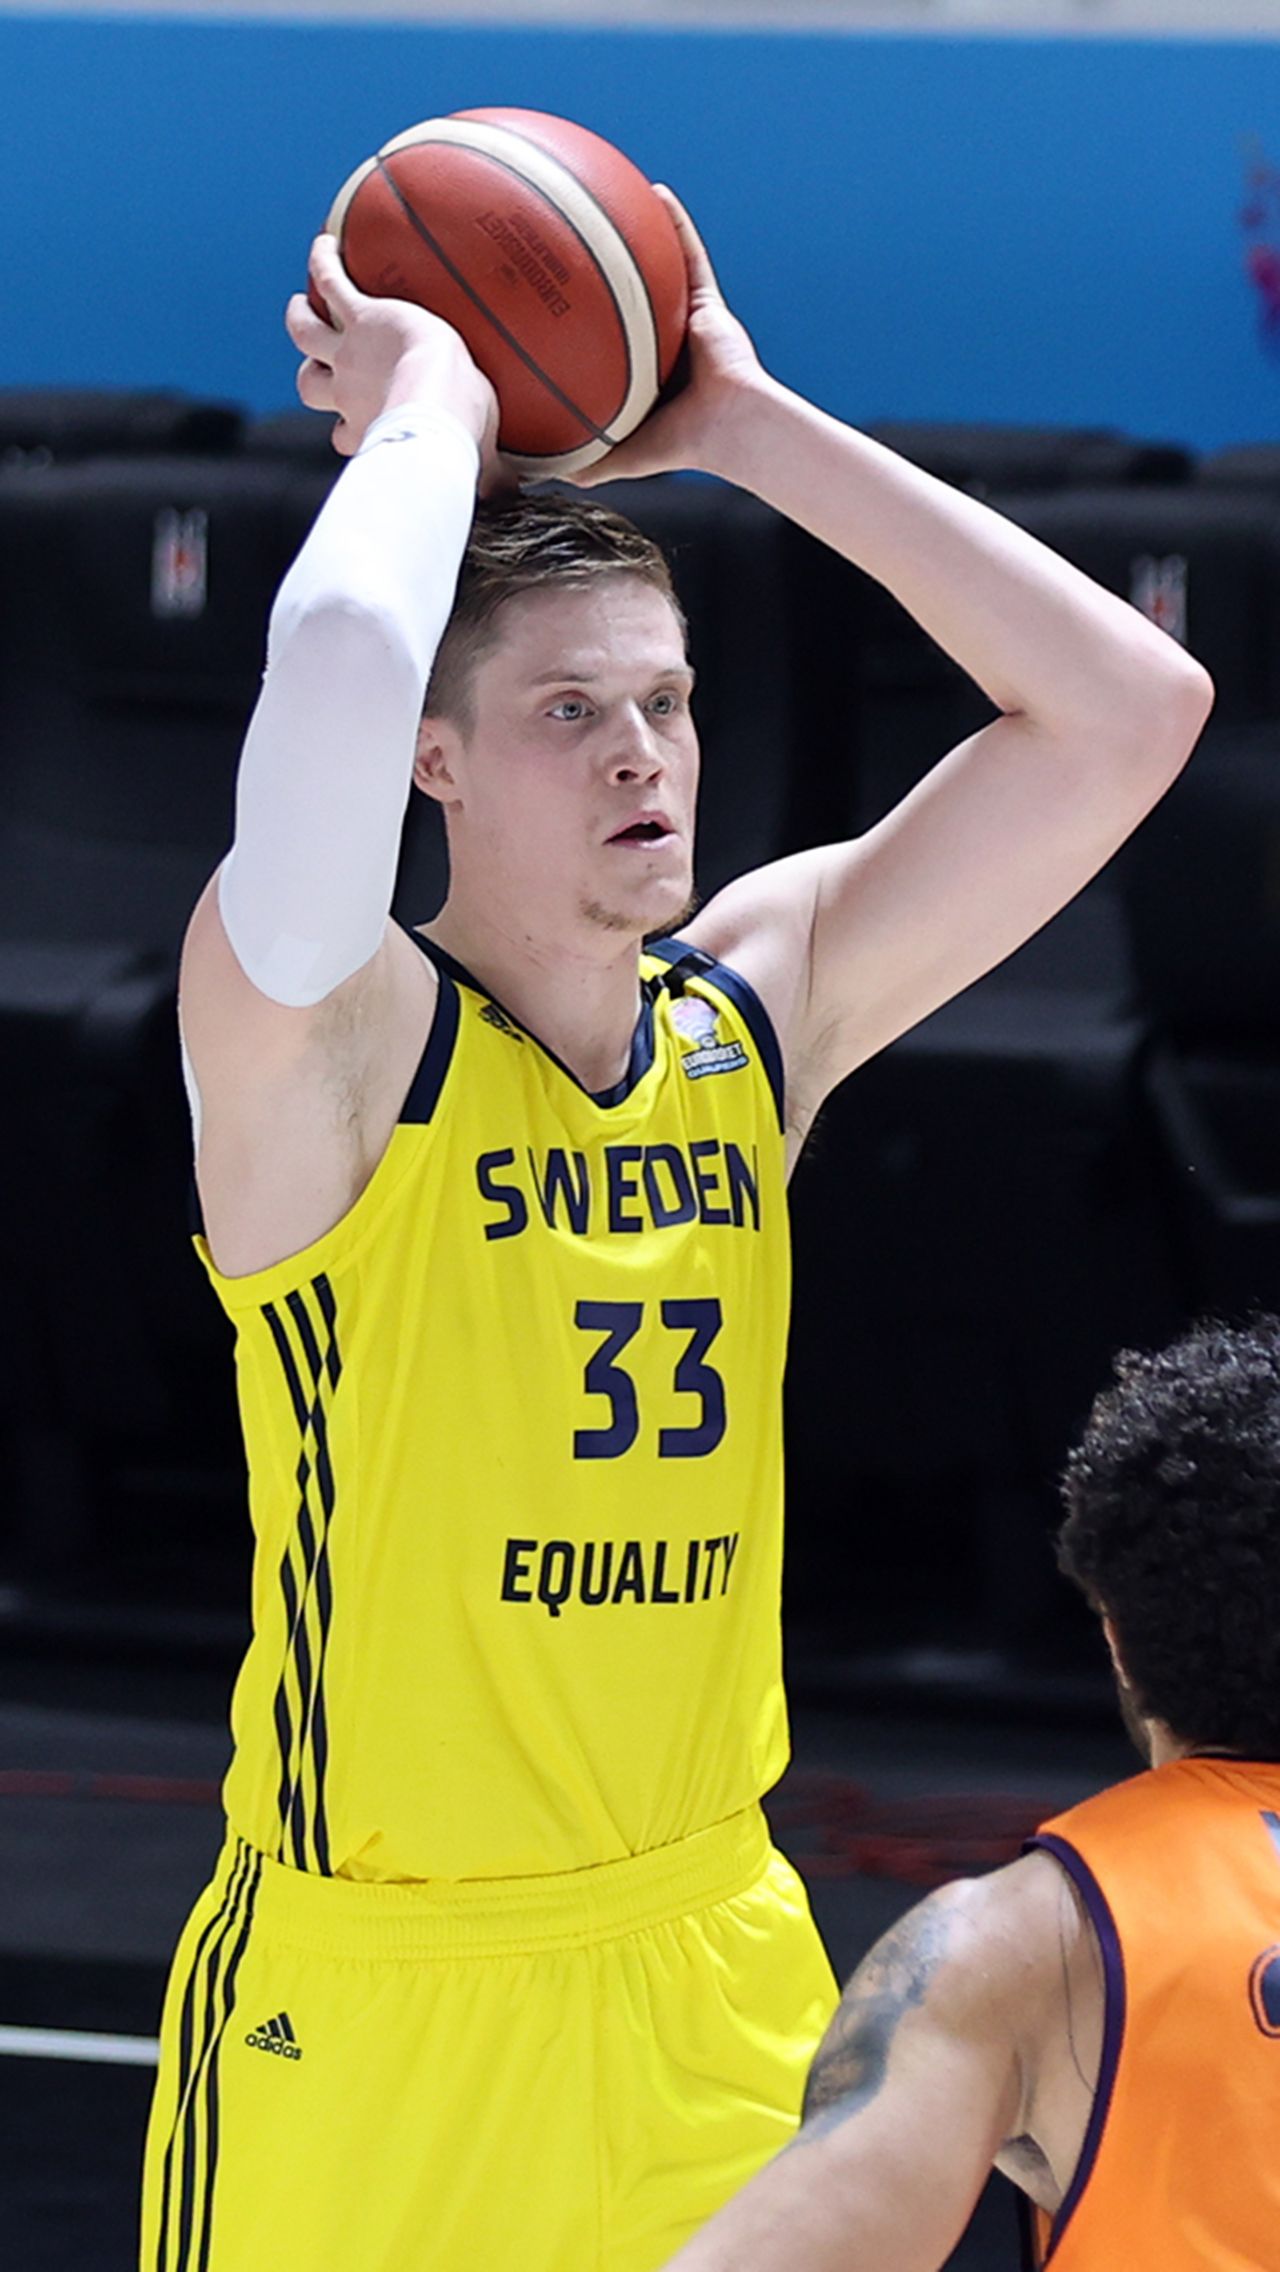 «К сожалению, вынуждены прийти к выводу, что для Юнаса Йеребко нет условий представлять сборную Швеции по баскетболу», — говорится в заявлении баскетбольной федерации Швеции. 